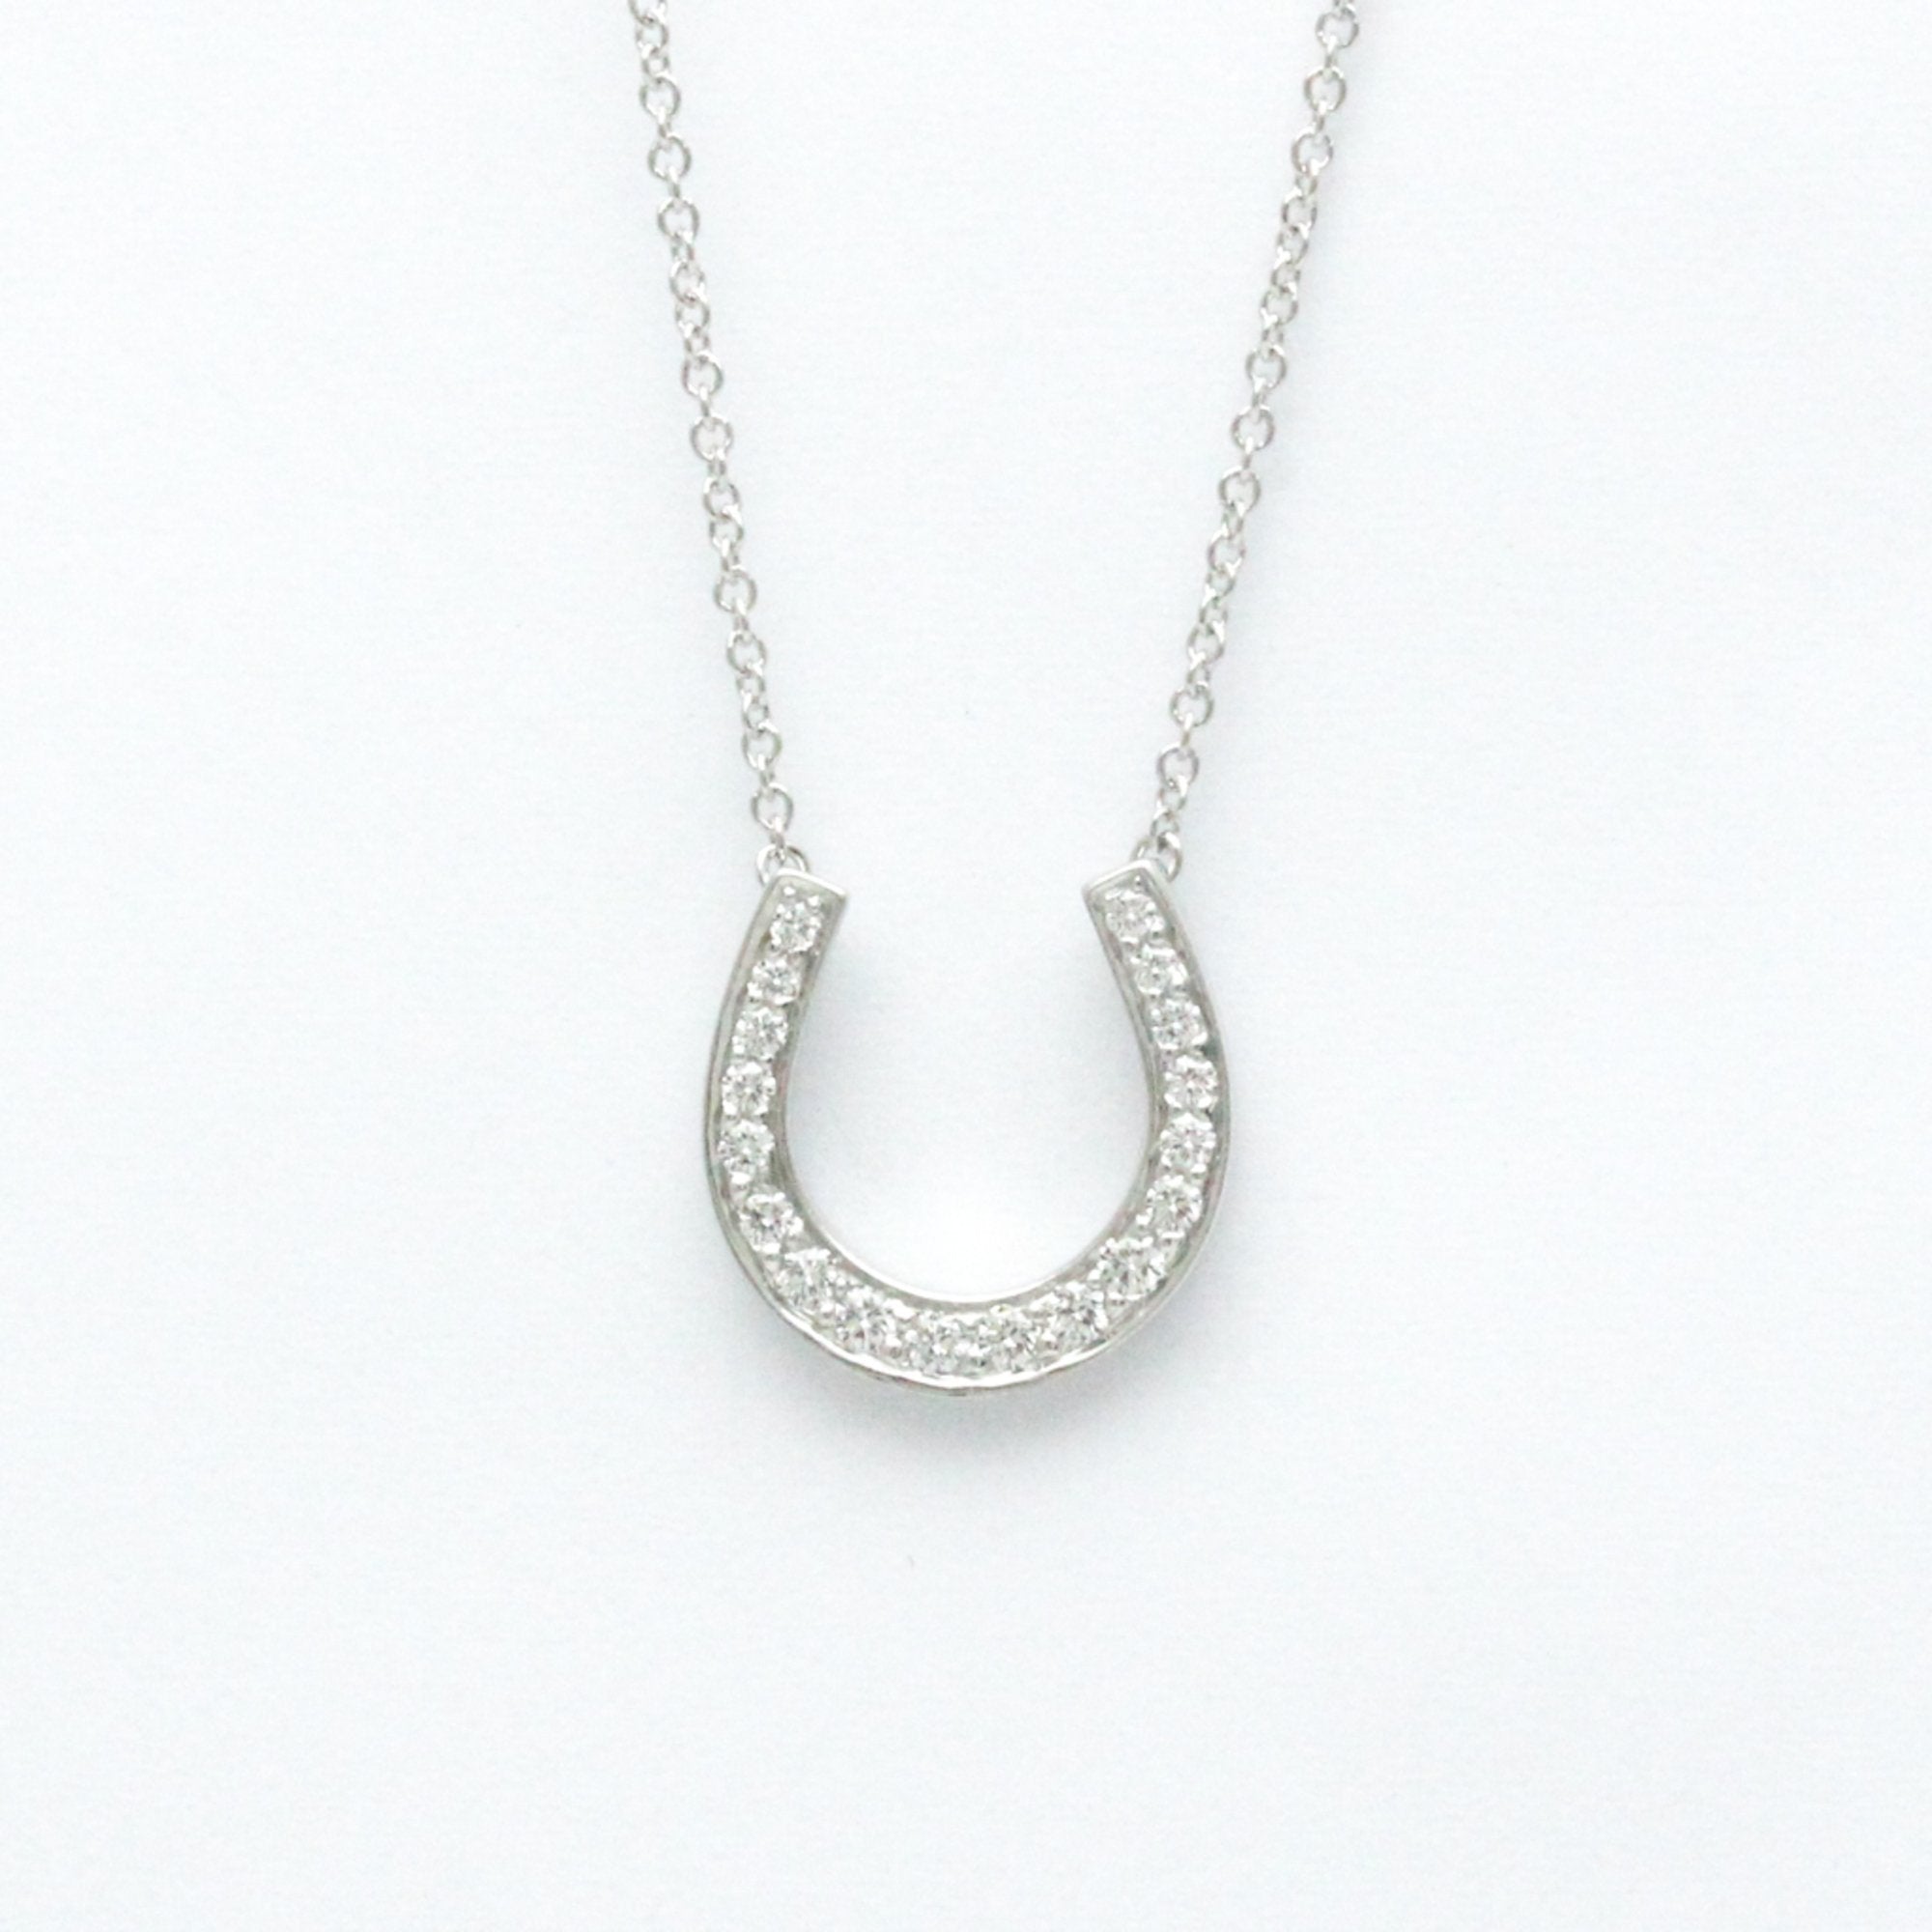 Image of TIFFANY Horseshoe Diamond Necklace Platinum 950 Diamond Men,Women Fashion Pendant Necklace [Silver]